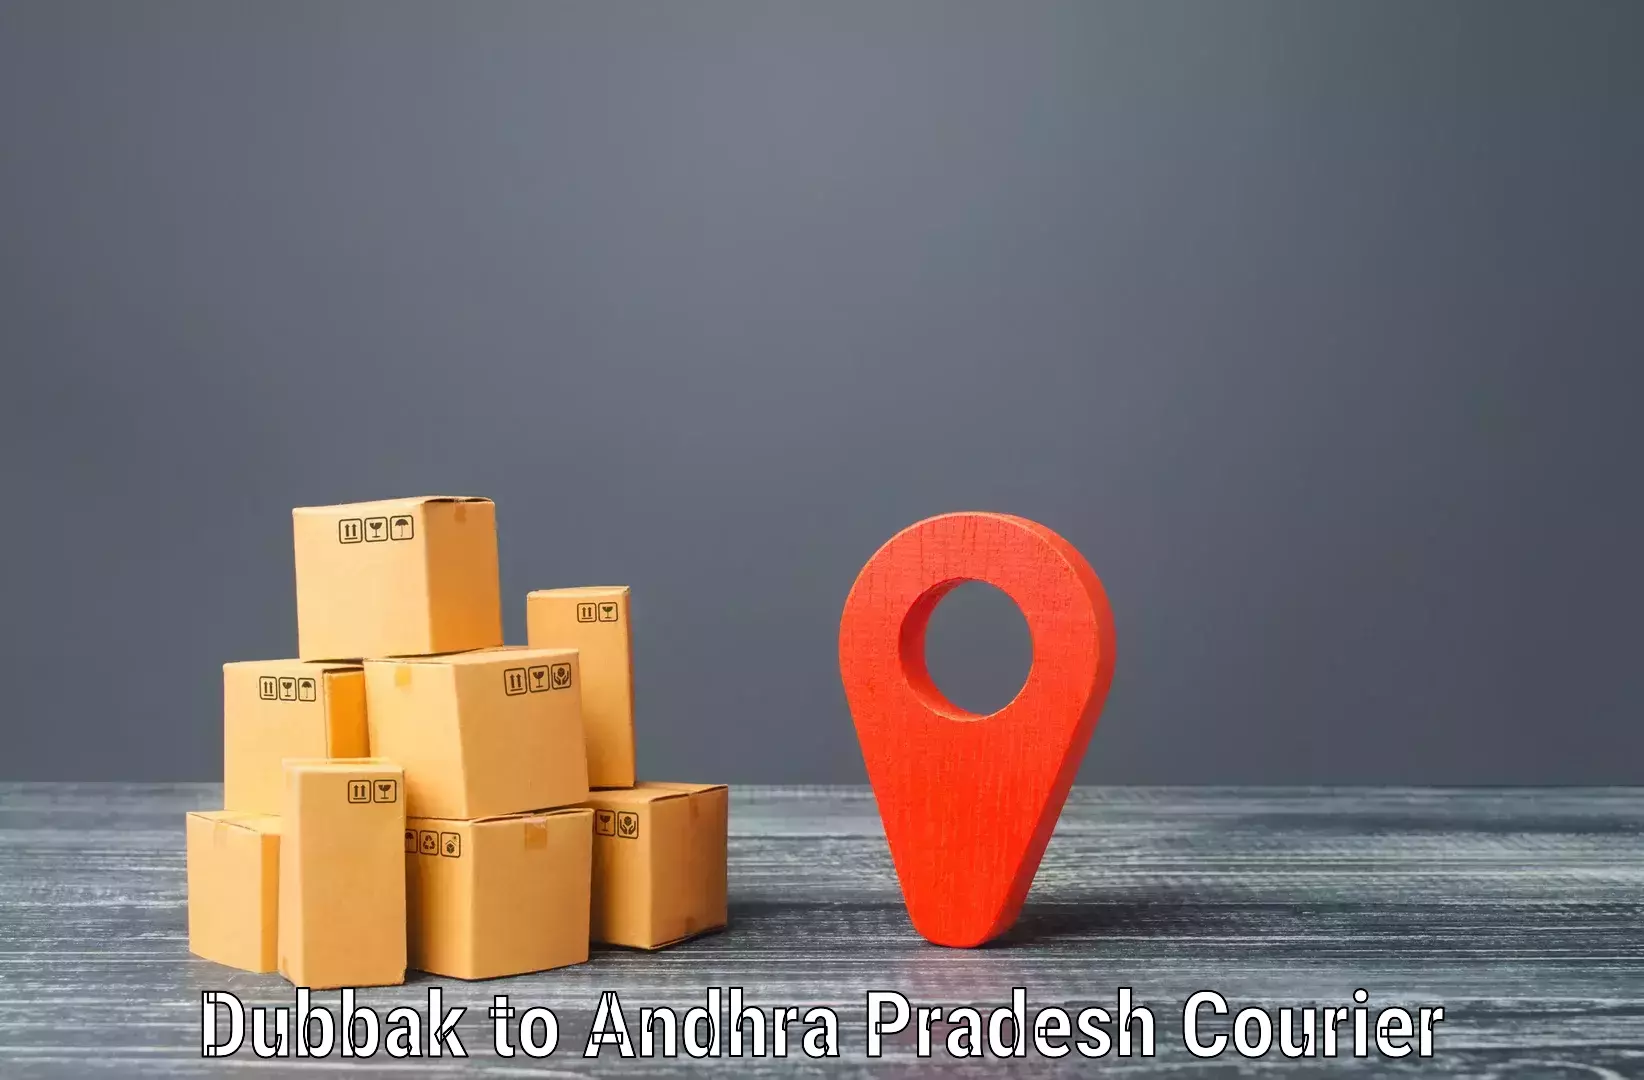 Package delivery network Dubbak to Araku